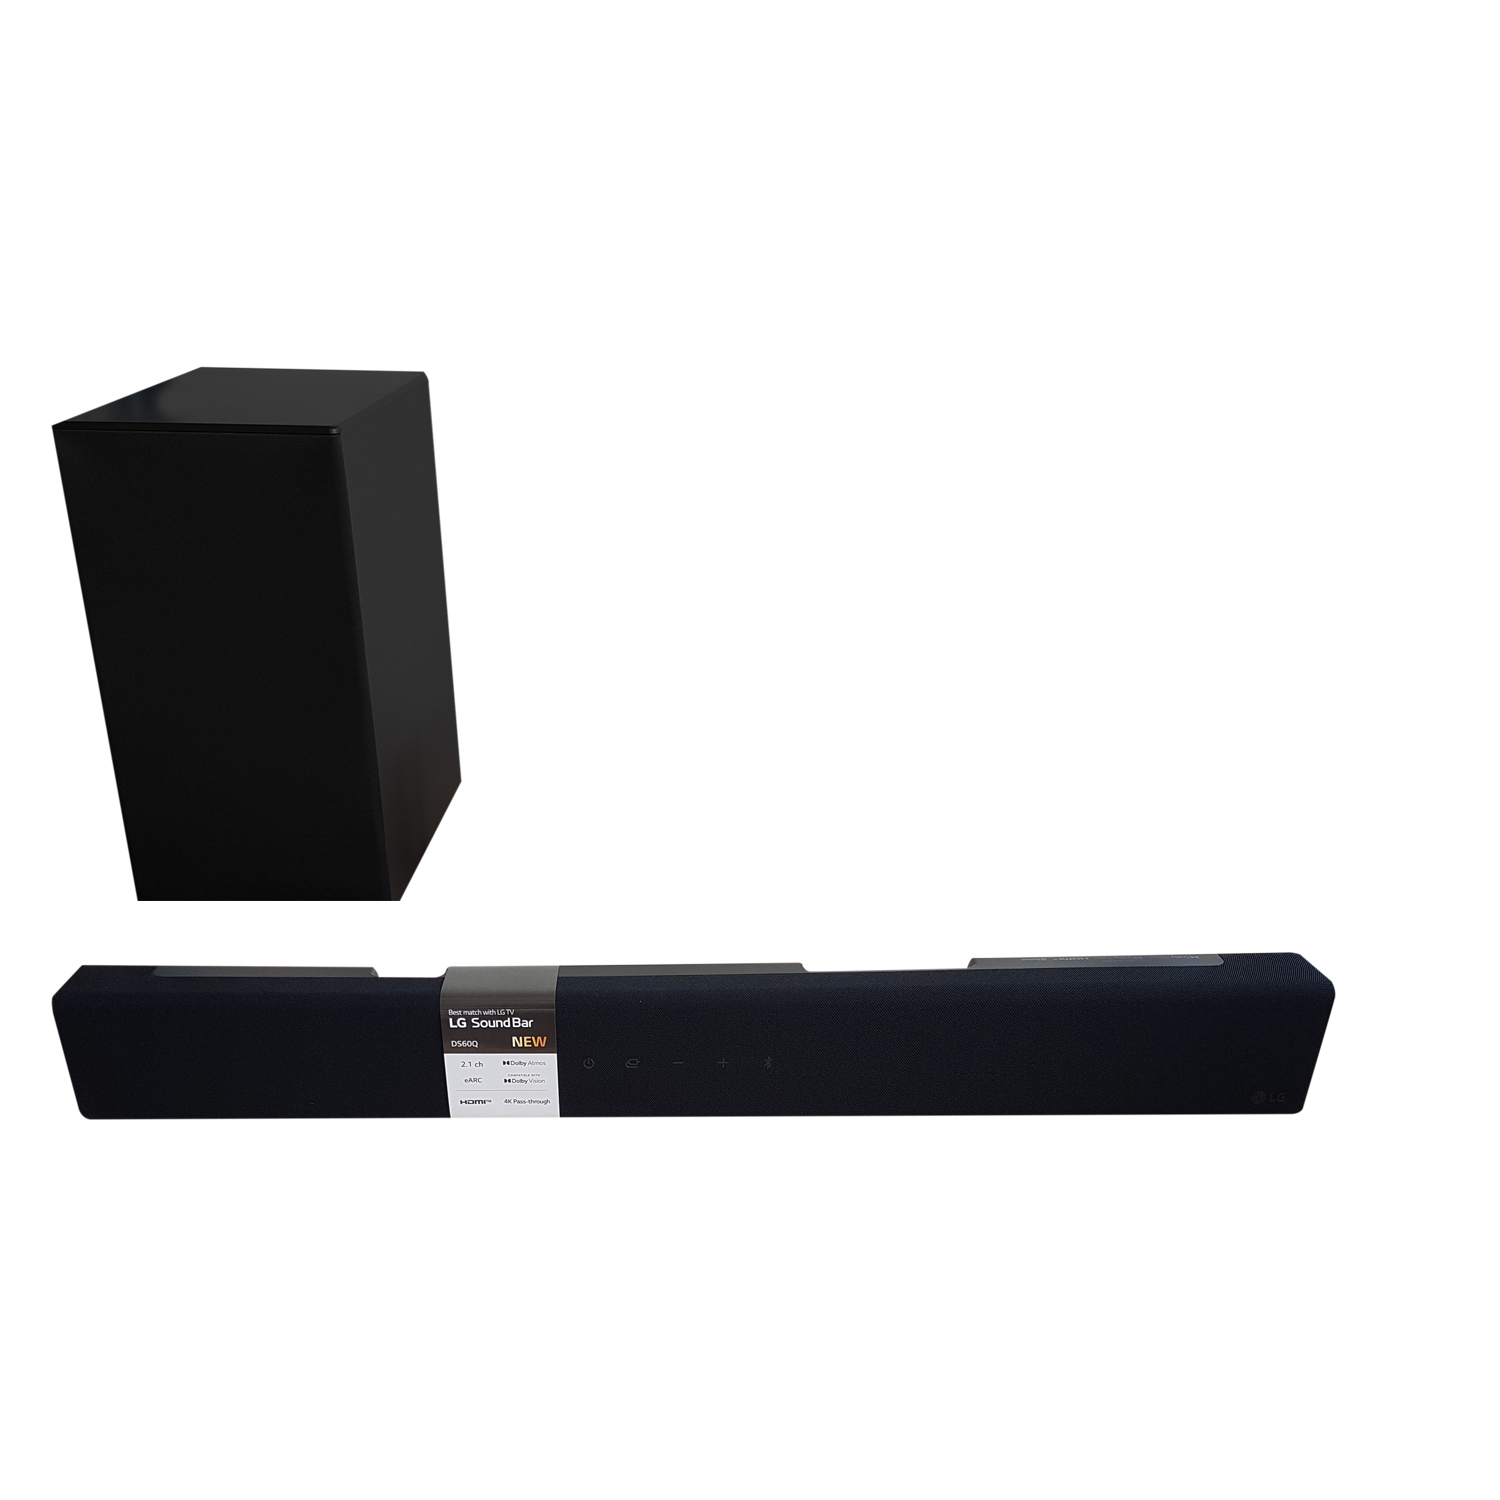 LG DS60Q Soundbar mit Subwoofer 2.1 Dolby Atmos schwarz von LG